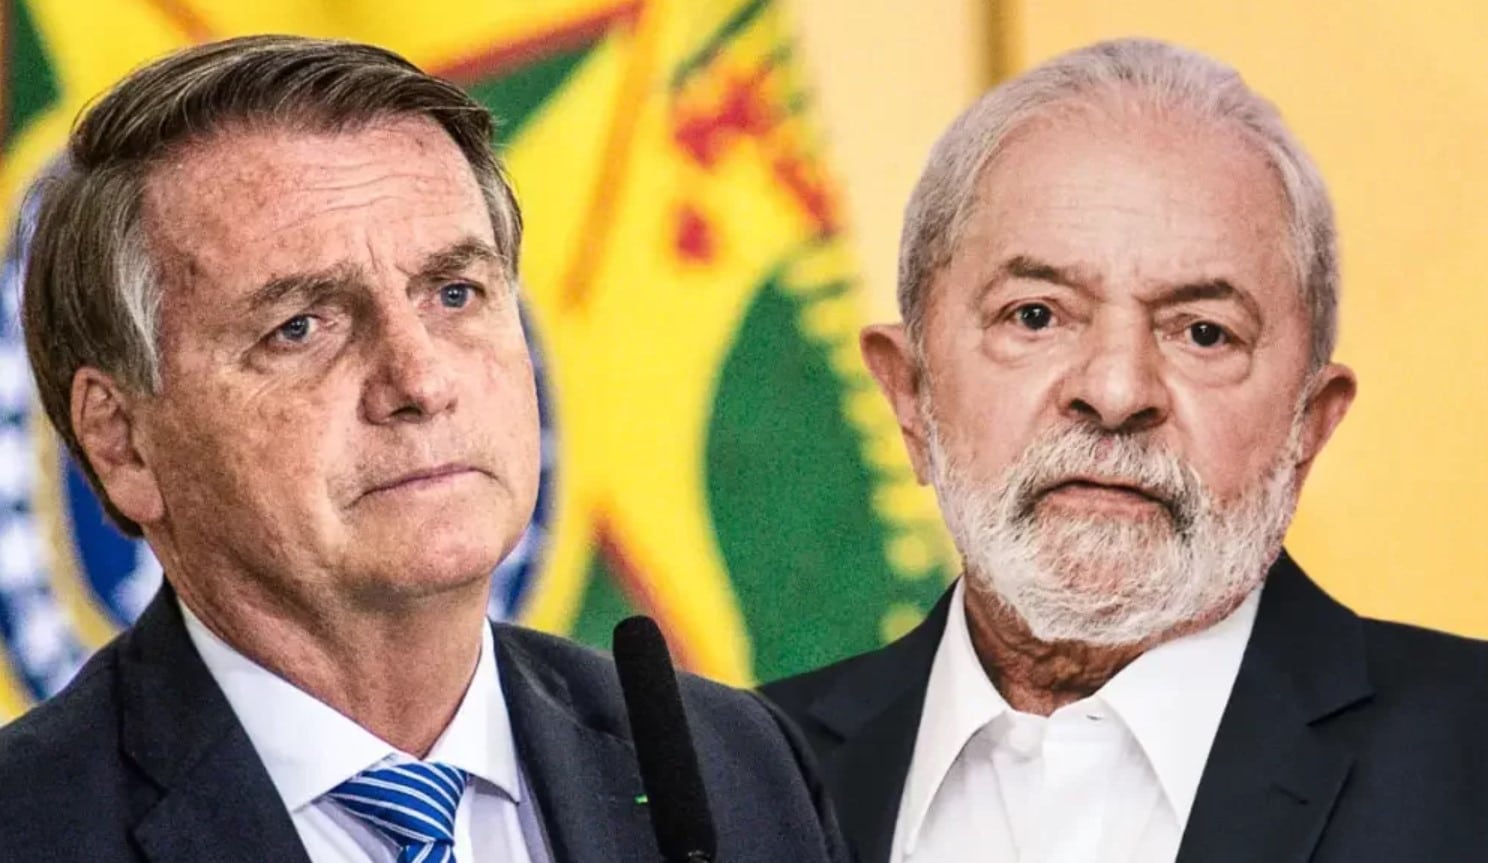 URGENTE: pesquisa do instituto Paraná mostra Bolsonaro em primeiro lugar na corrida presidencial mesmo estando inelegível; VEJA NÚMEROS